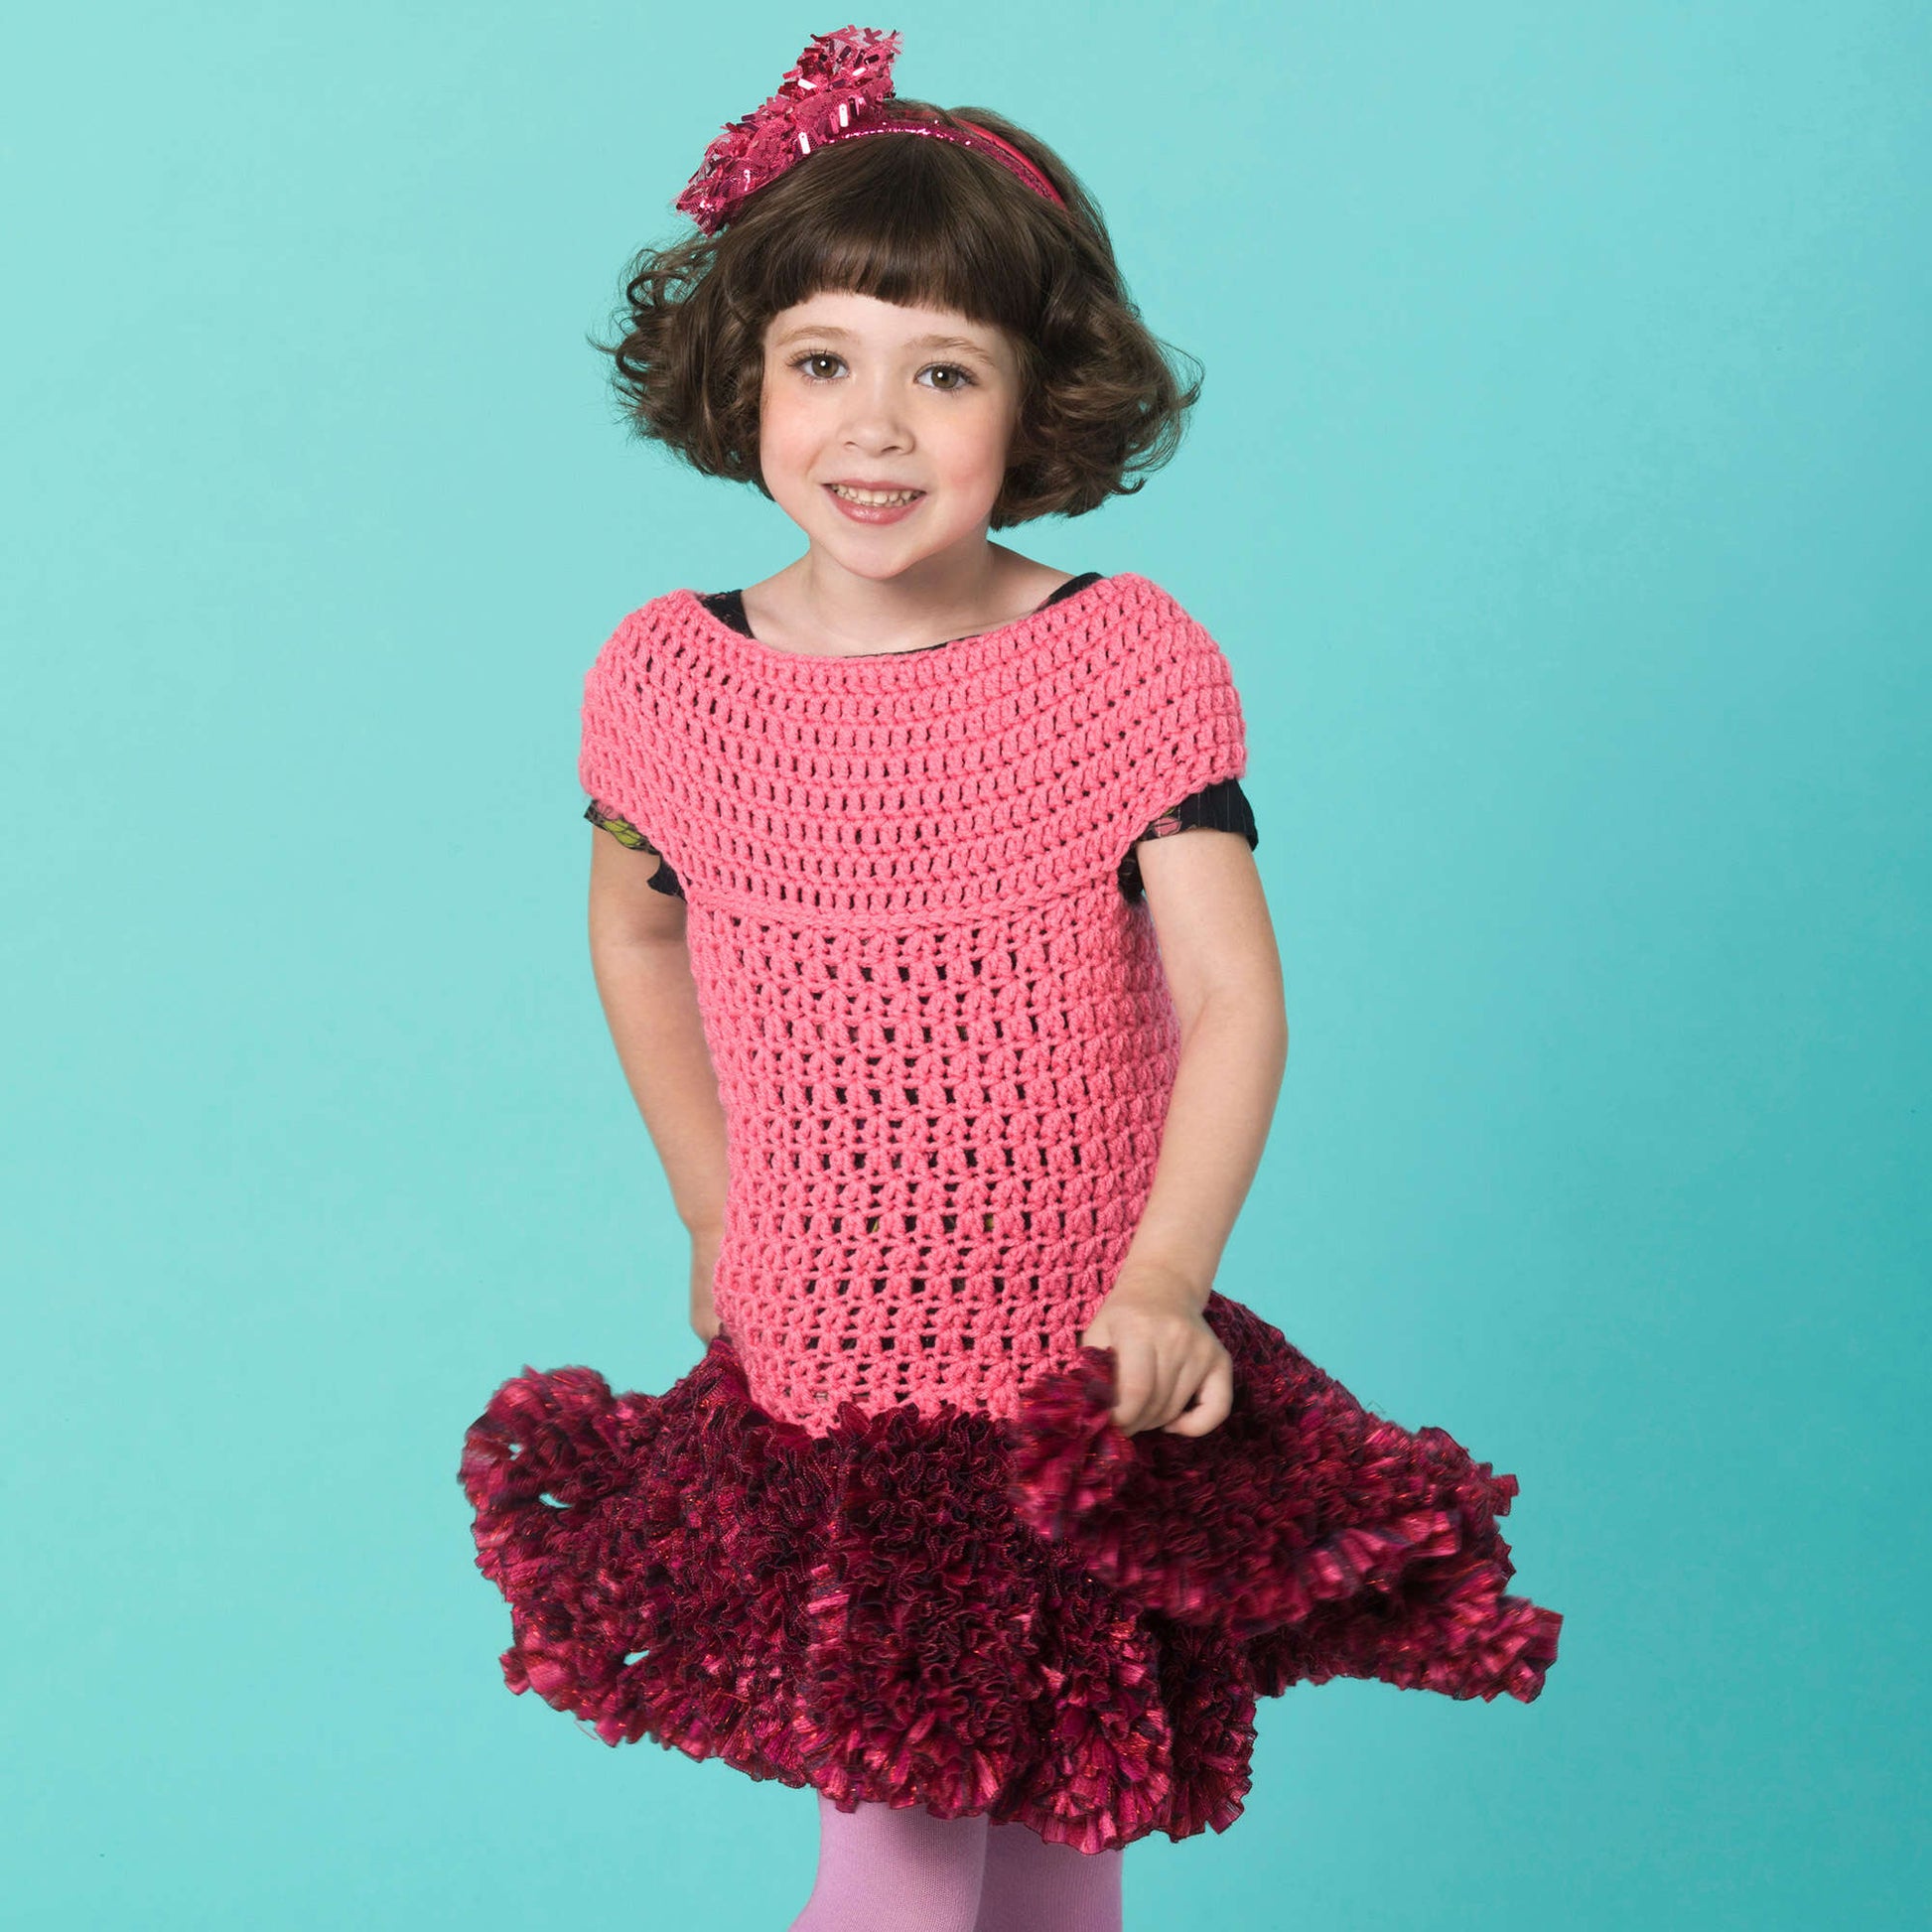 Free Red Heart Twirl Party Dress Crochet Pattern